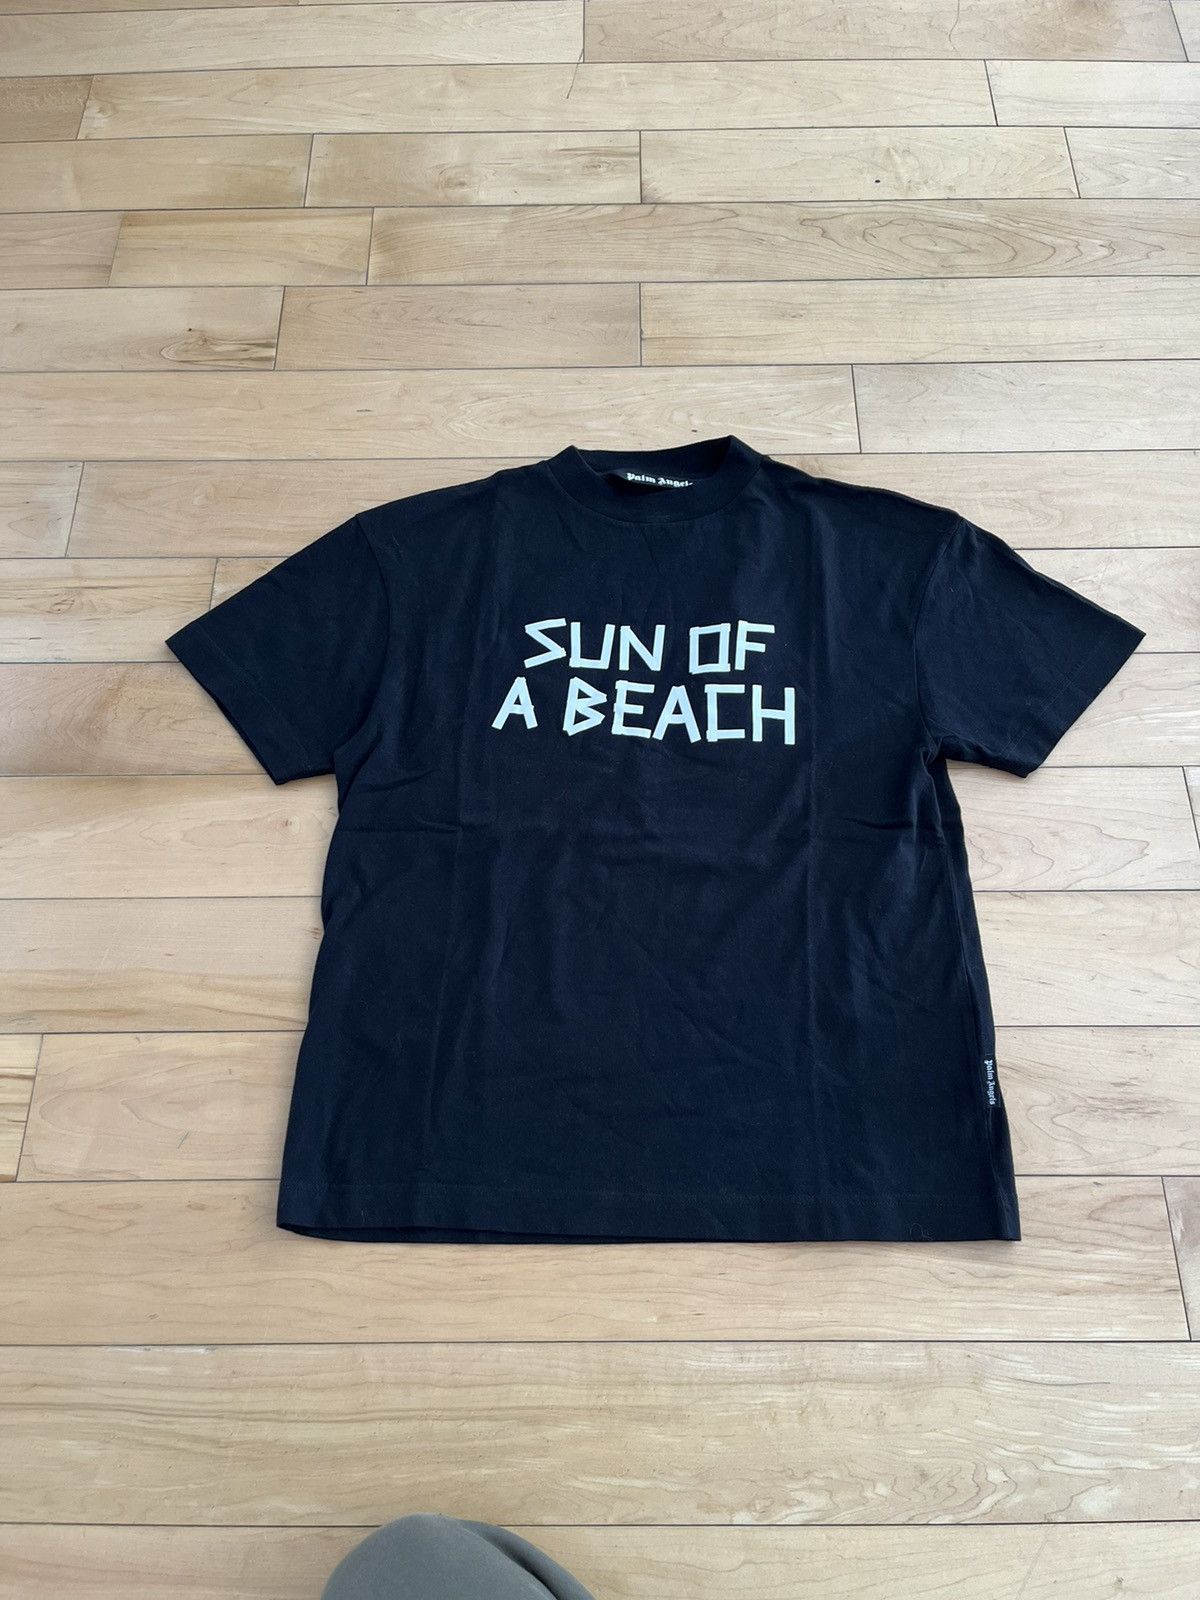 NWT - Palm Angels "Sun of a Beach" T-shirt - 1